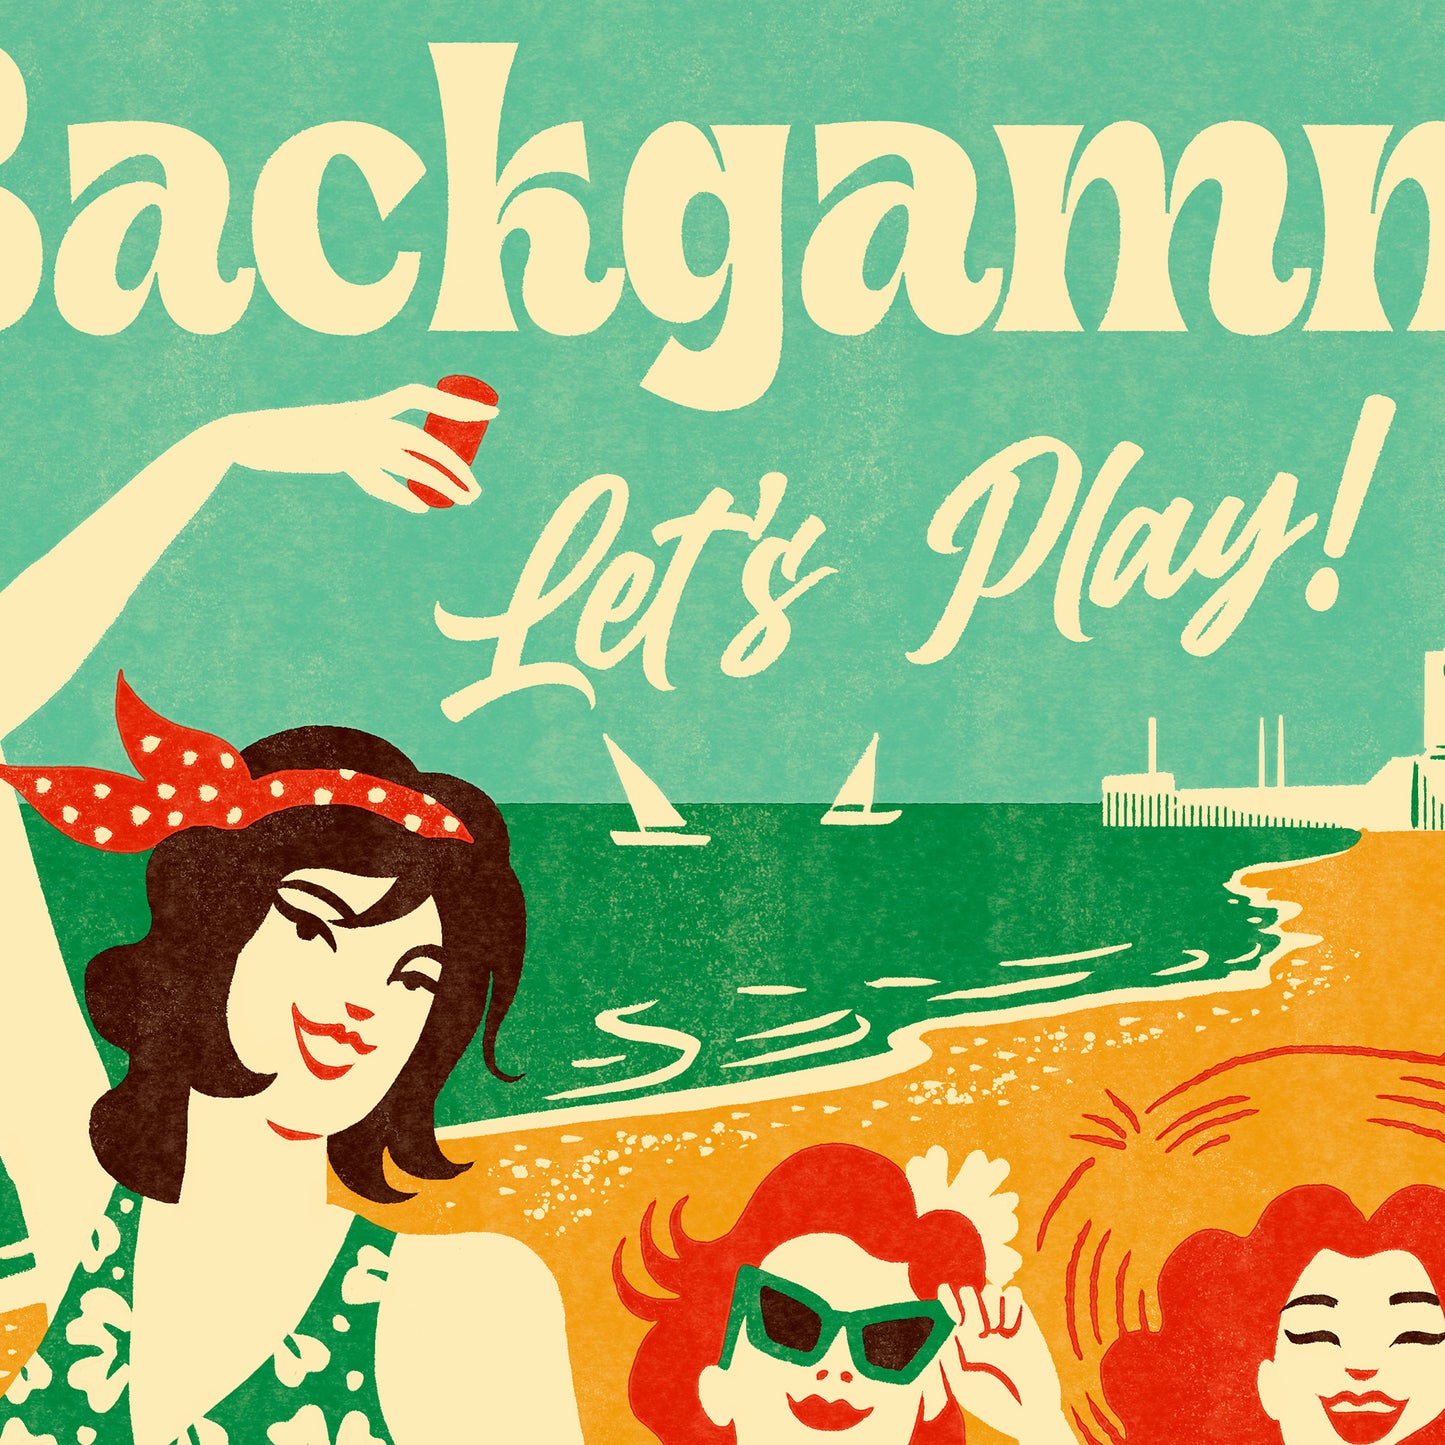 Backgammon - Let's Play!, Backgammon-Poster im Vintage-Stil, von der Künstlerin Adria Marques für Backgammon Galaxy